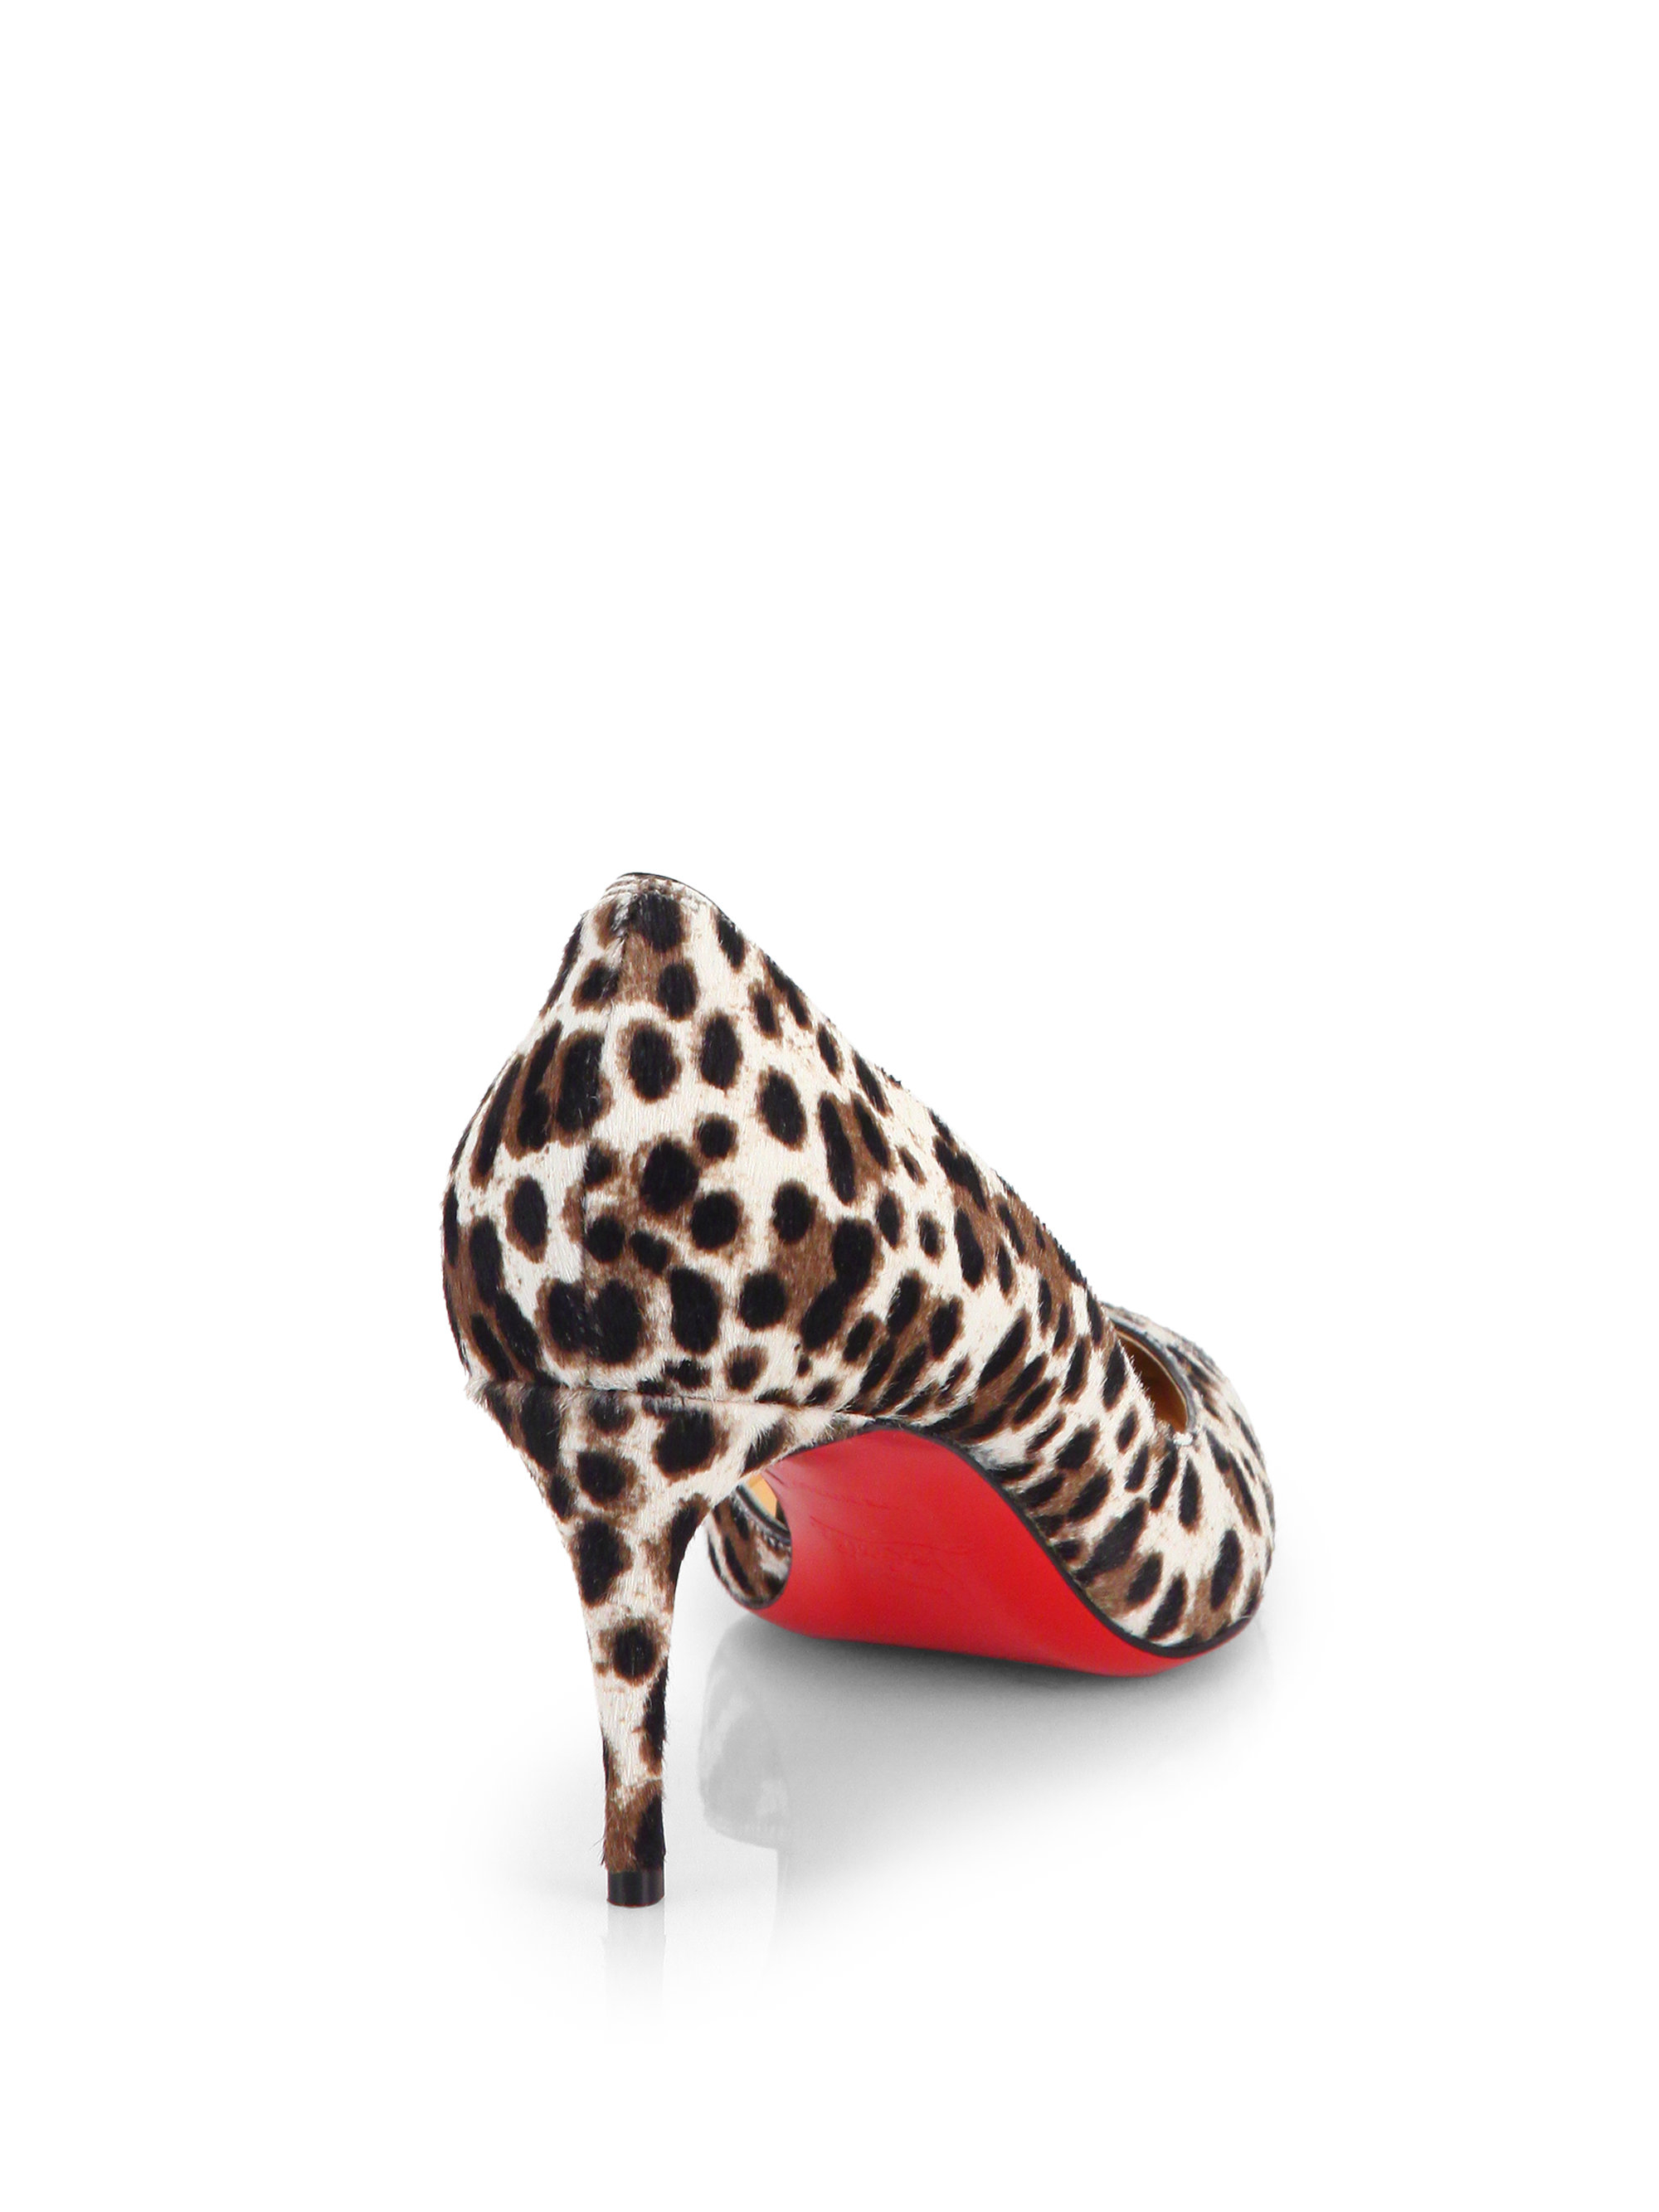 louis vuitton red bottom heels - christian louboutin leopard print pumps